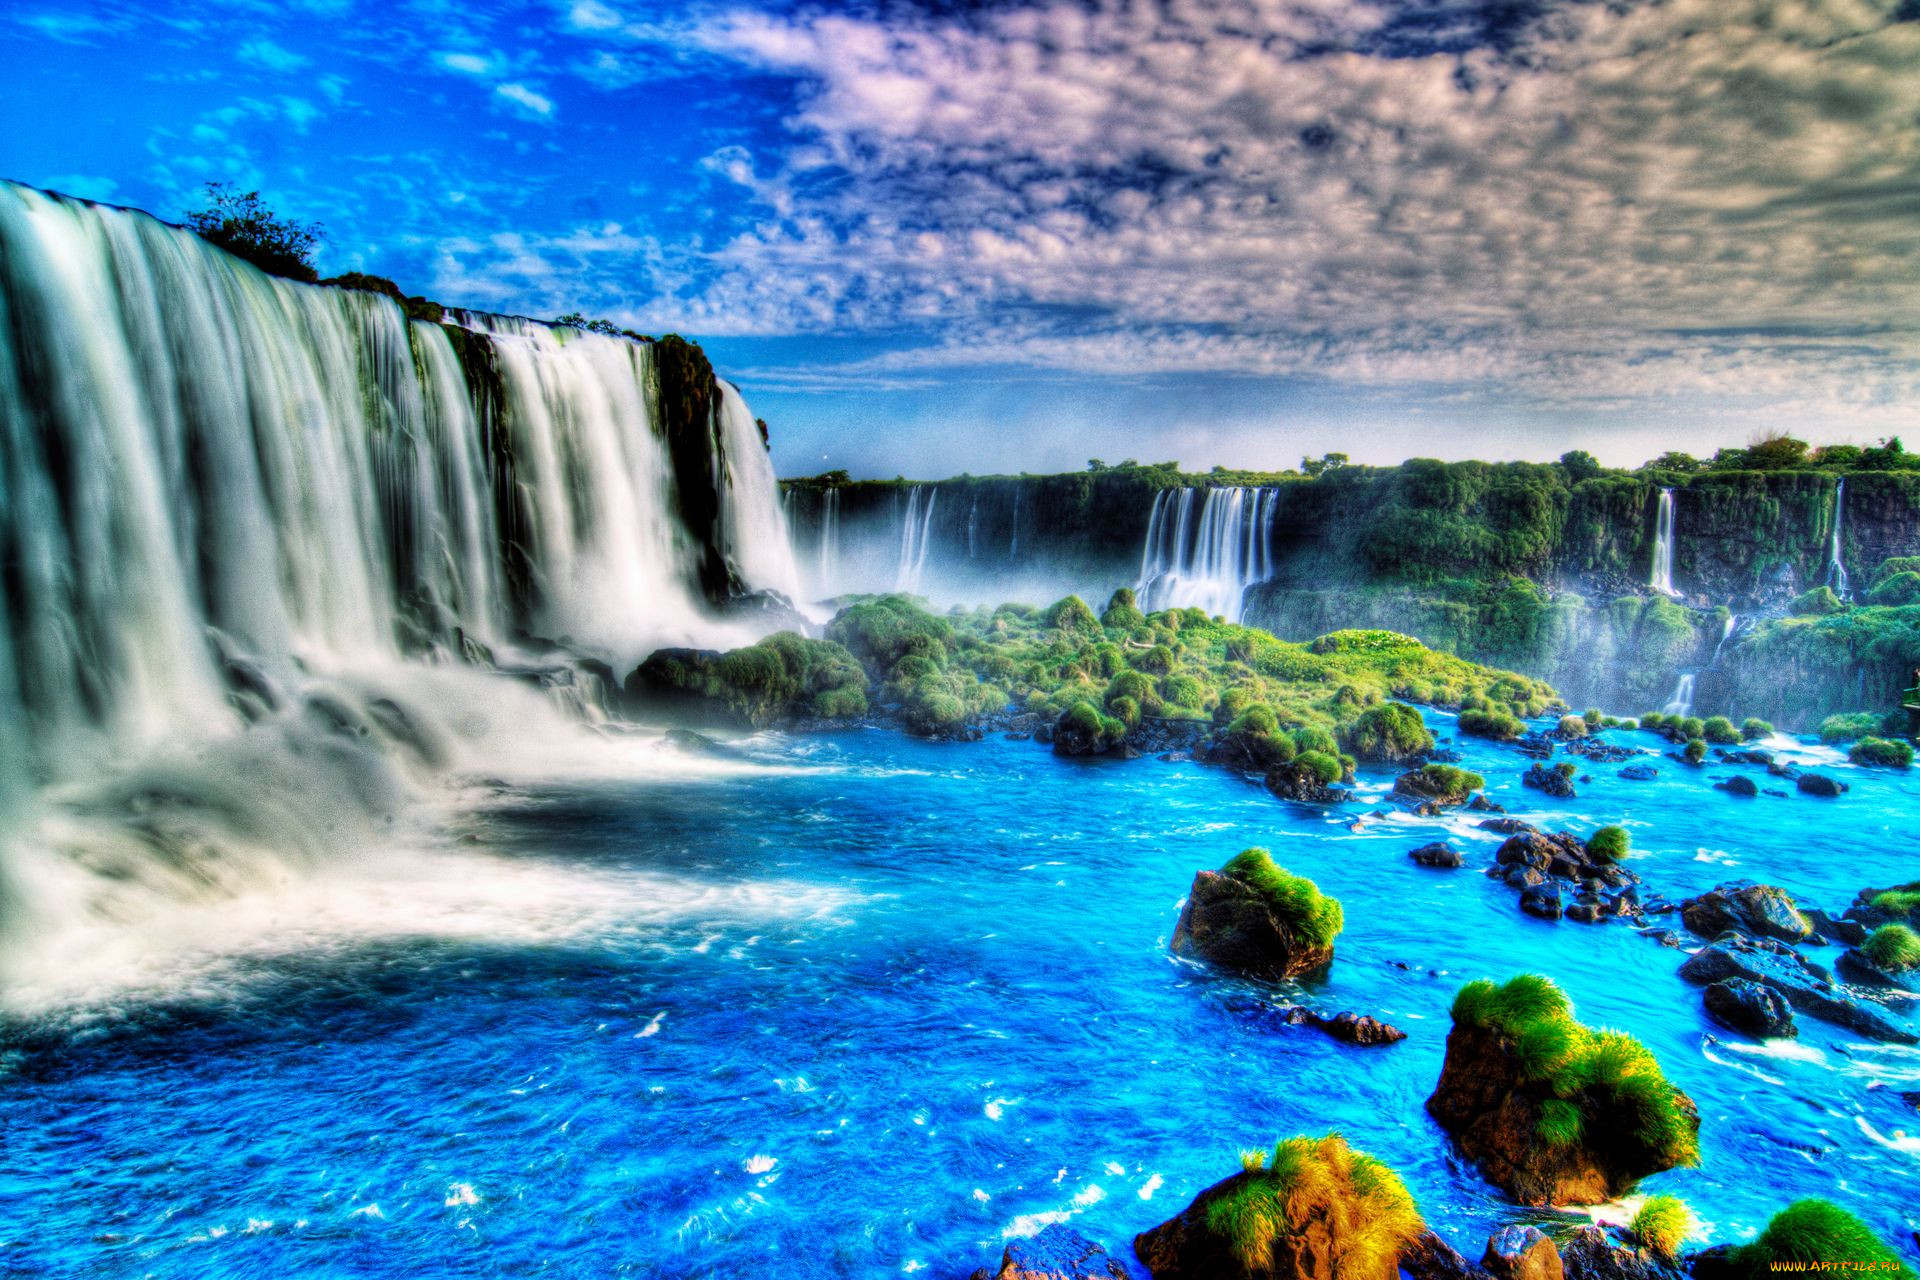 Обои на телефон живой водопад. Красивые водопады. Красивая природа водопад. Водопад картинки. Картинки на рабочий стол водопад.